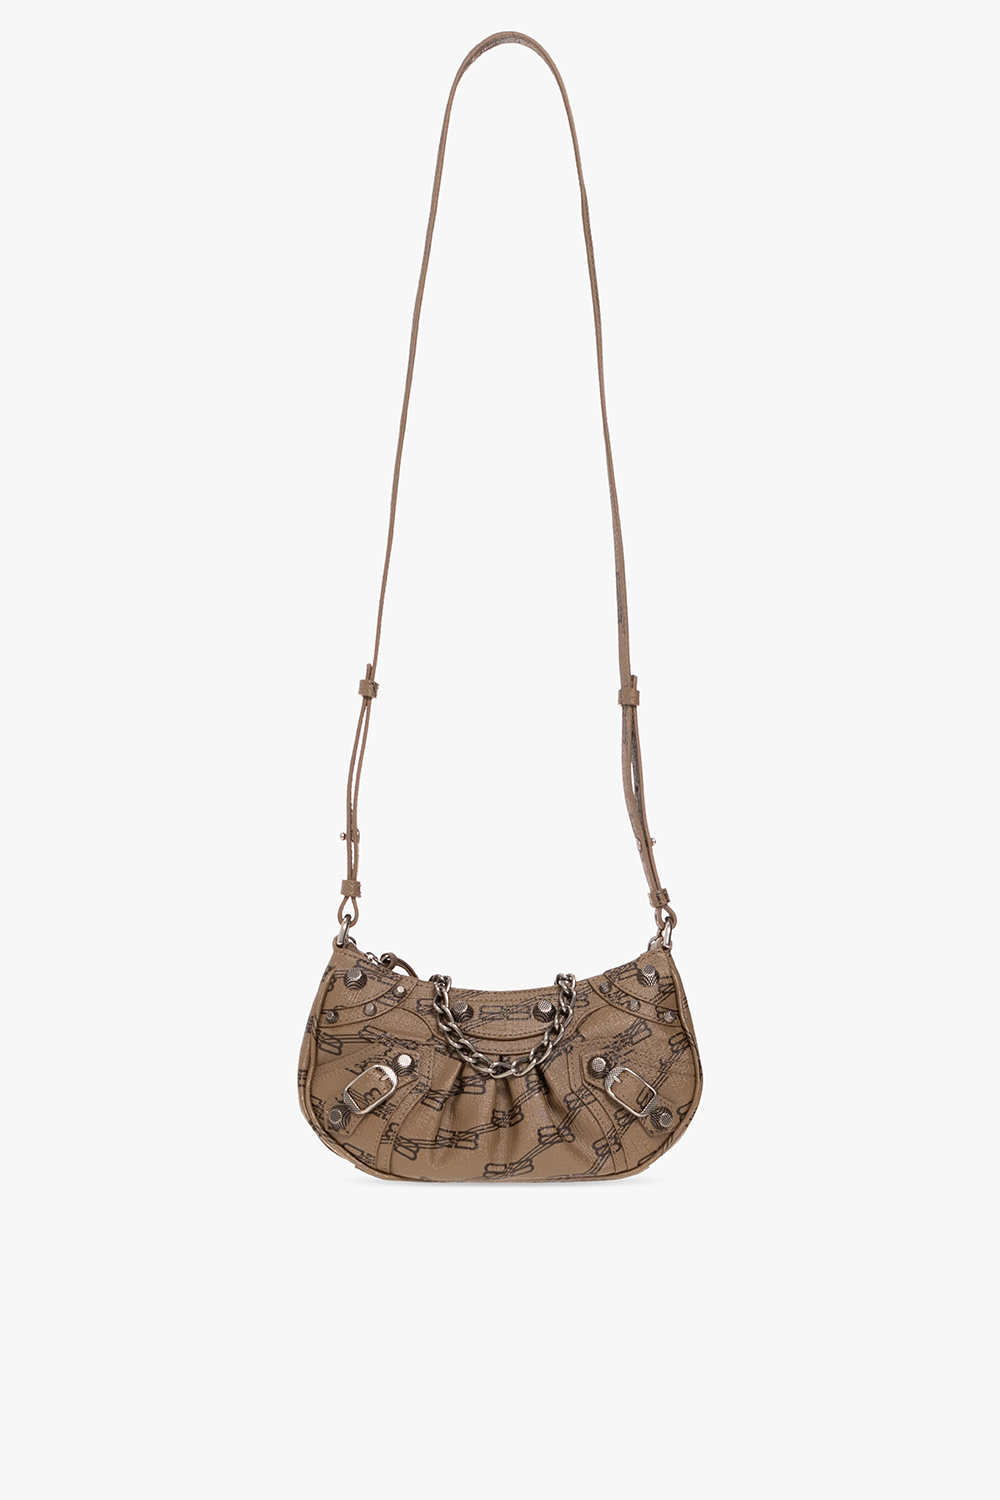 Louis Vuitton Bagatelle Bag - Vitkac shop online